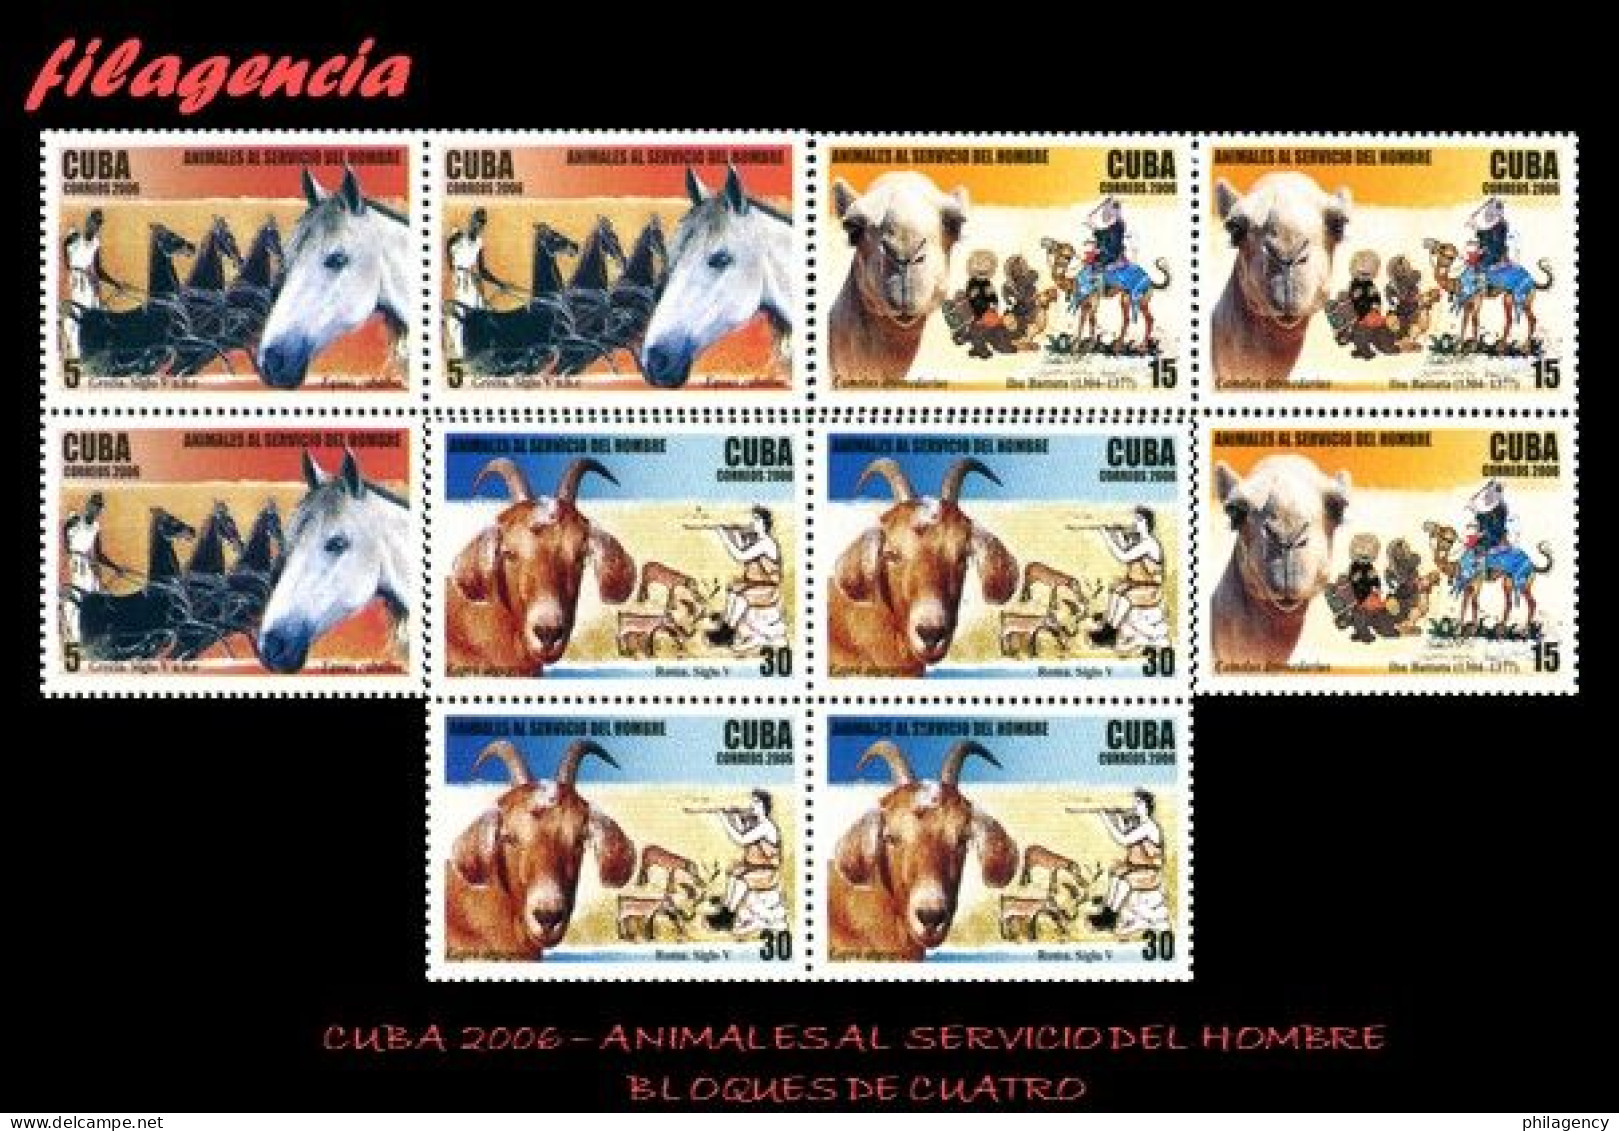 CUBA. BLOQUES DE CUATRO. 2006-24 ANIMALES AL SERVICIO DEL HOMBRE - Unused Stamps